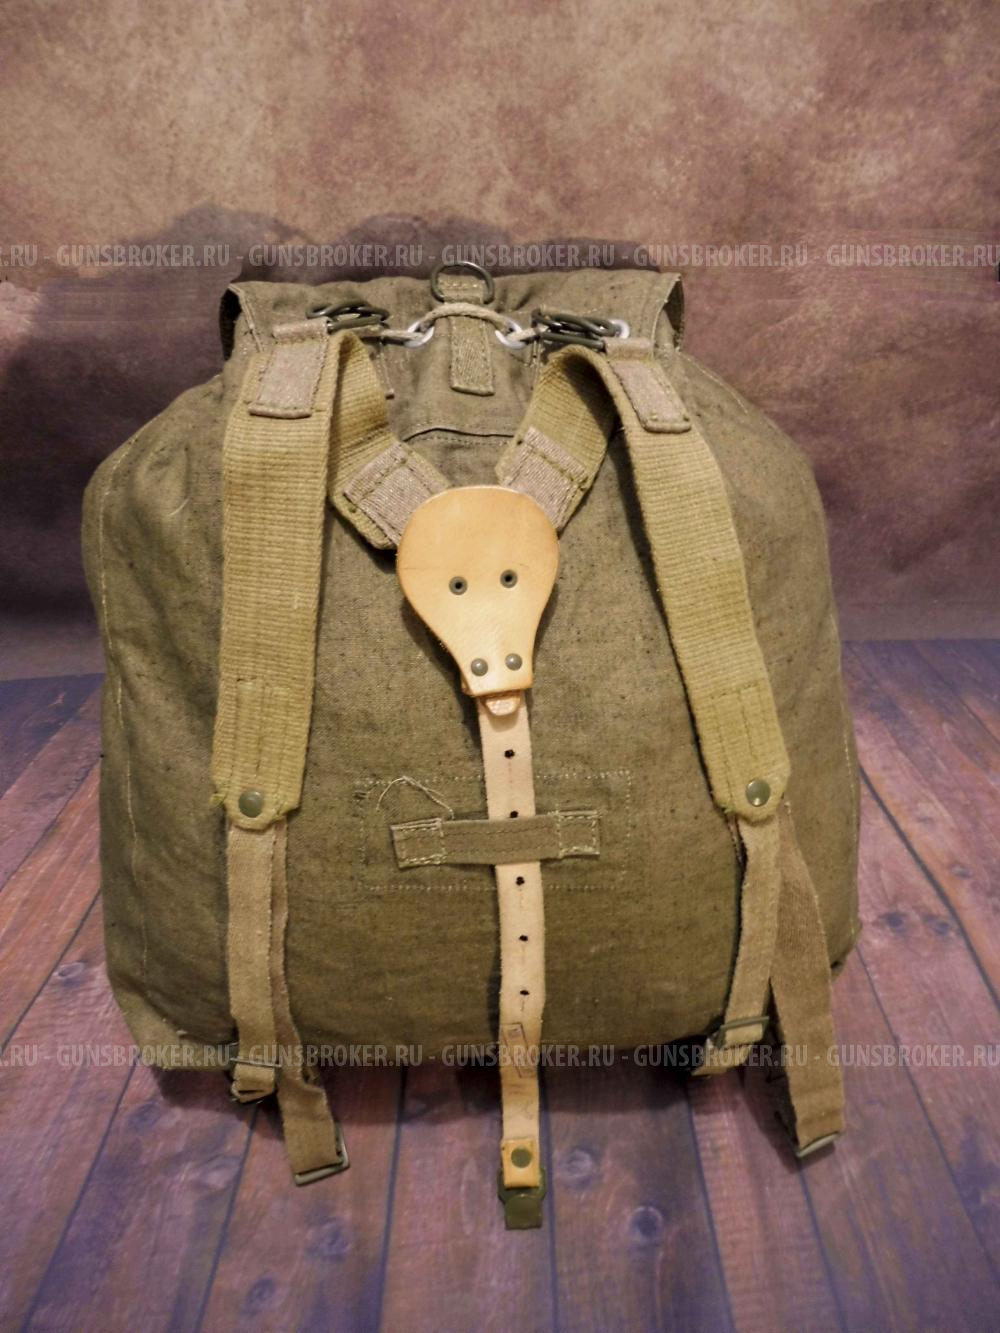 Немецкий рюкзак, периода ВОВ, раритет